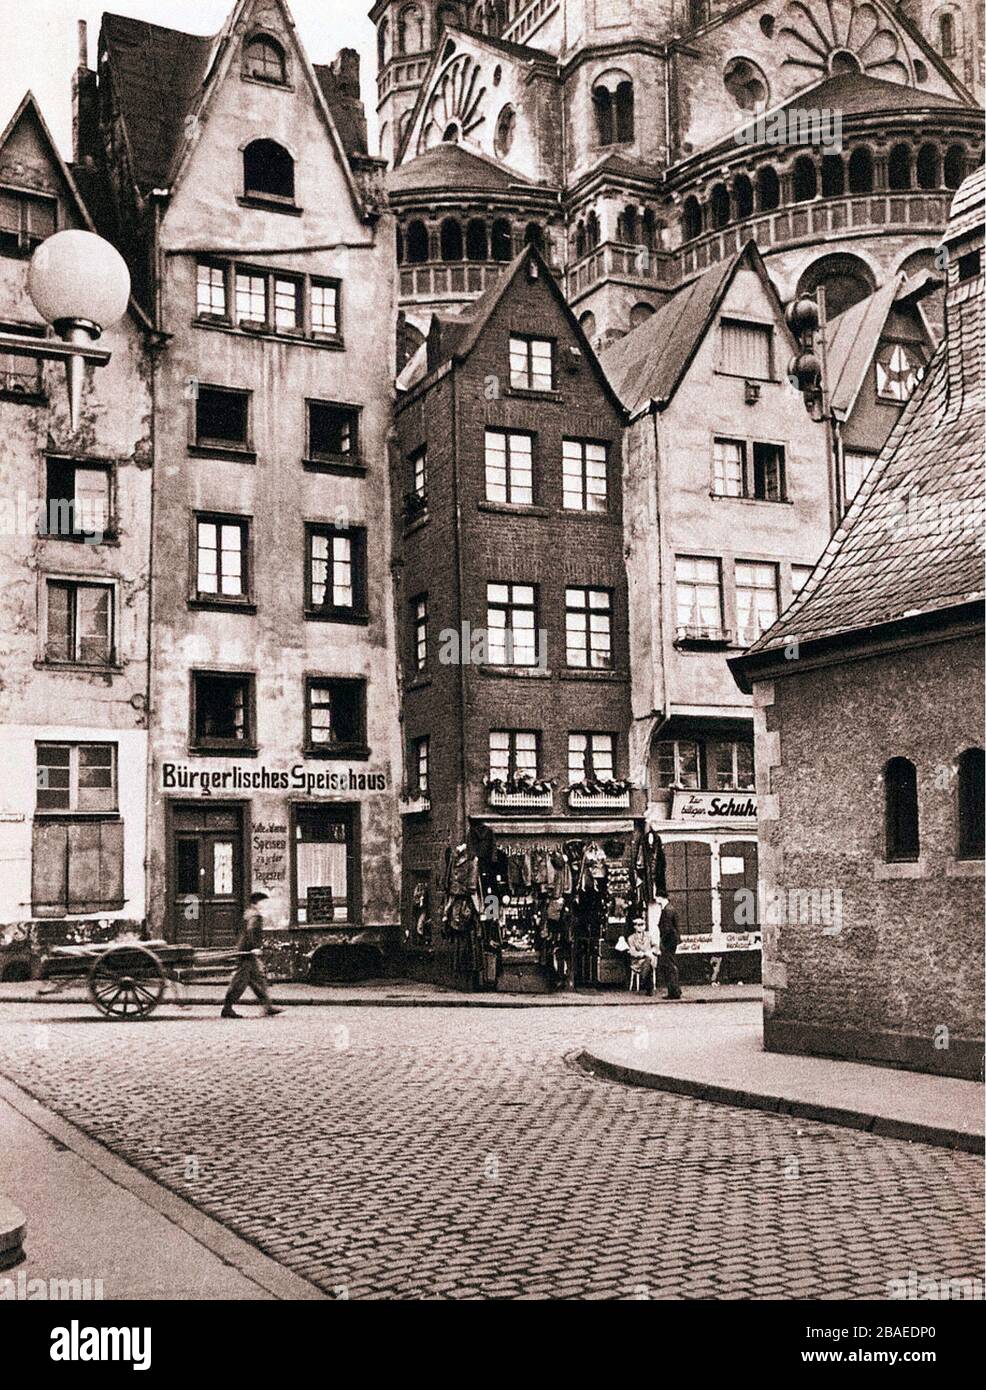 Centro storico, Colonia, Germania, 1934 Foto Stock